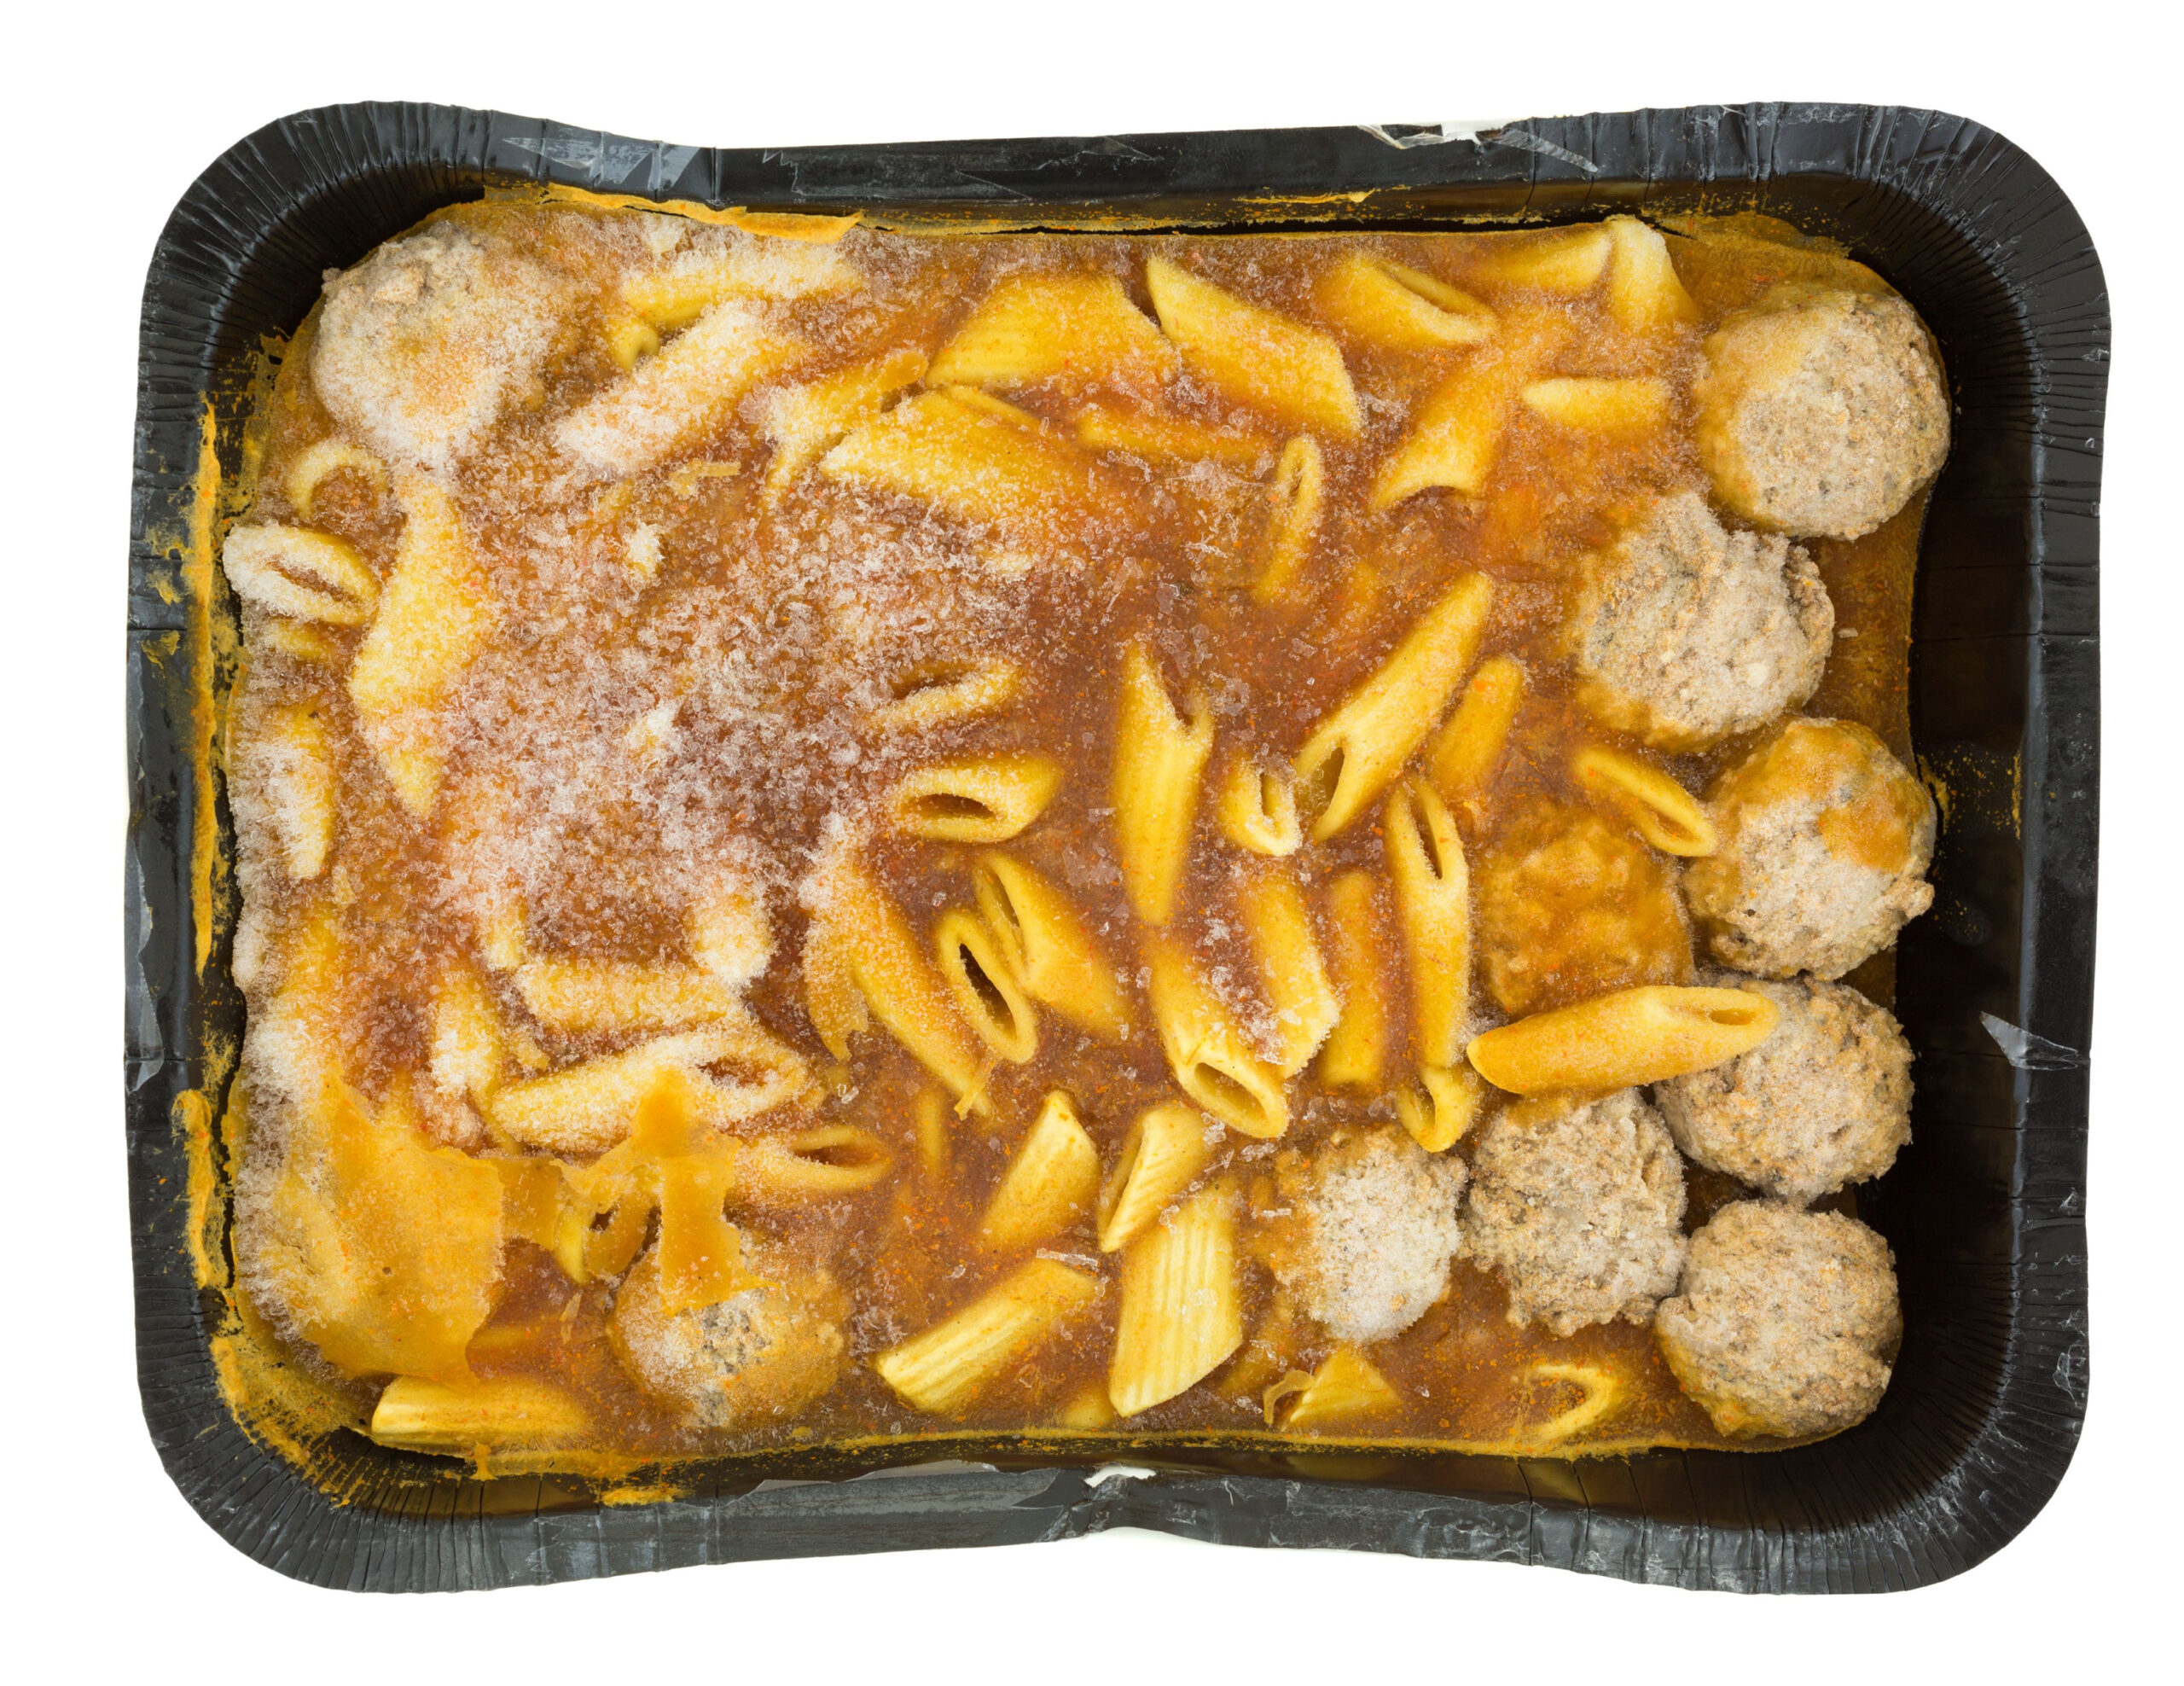 frozen pasta with meatballs